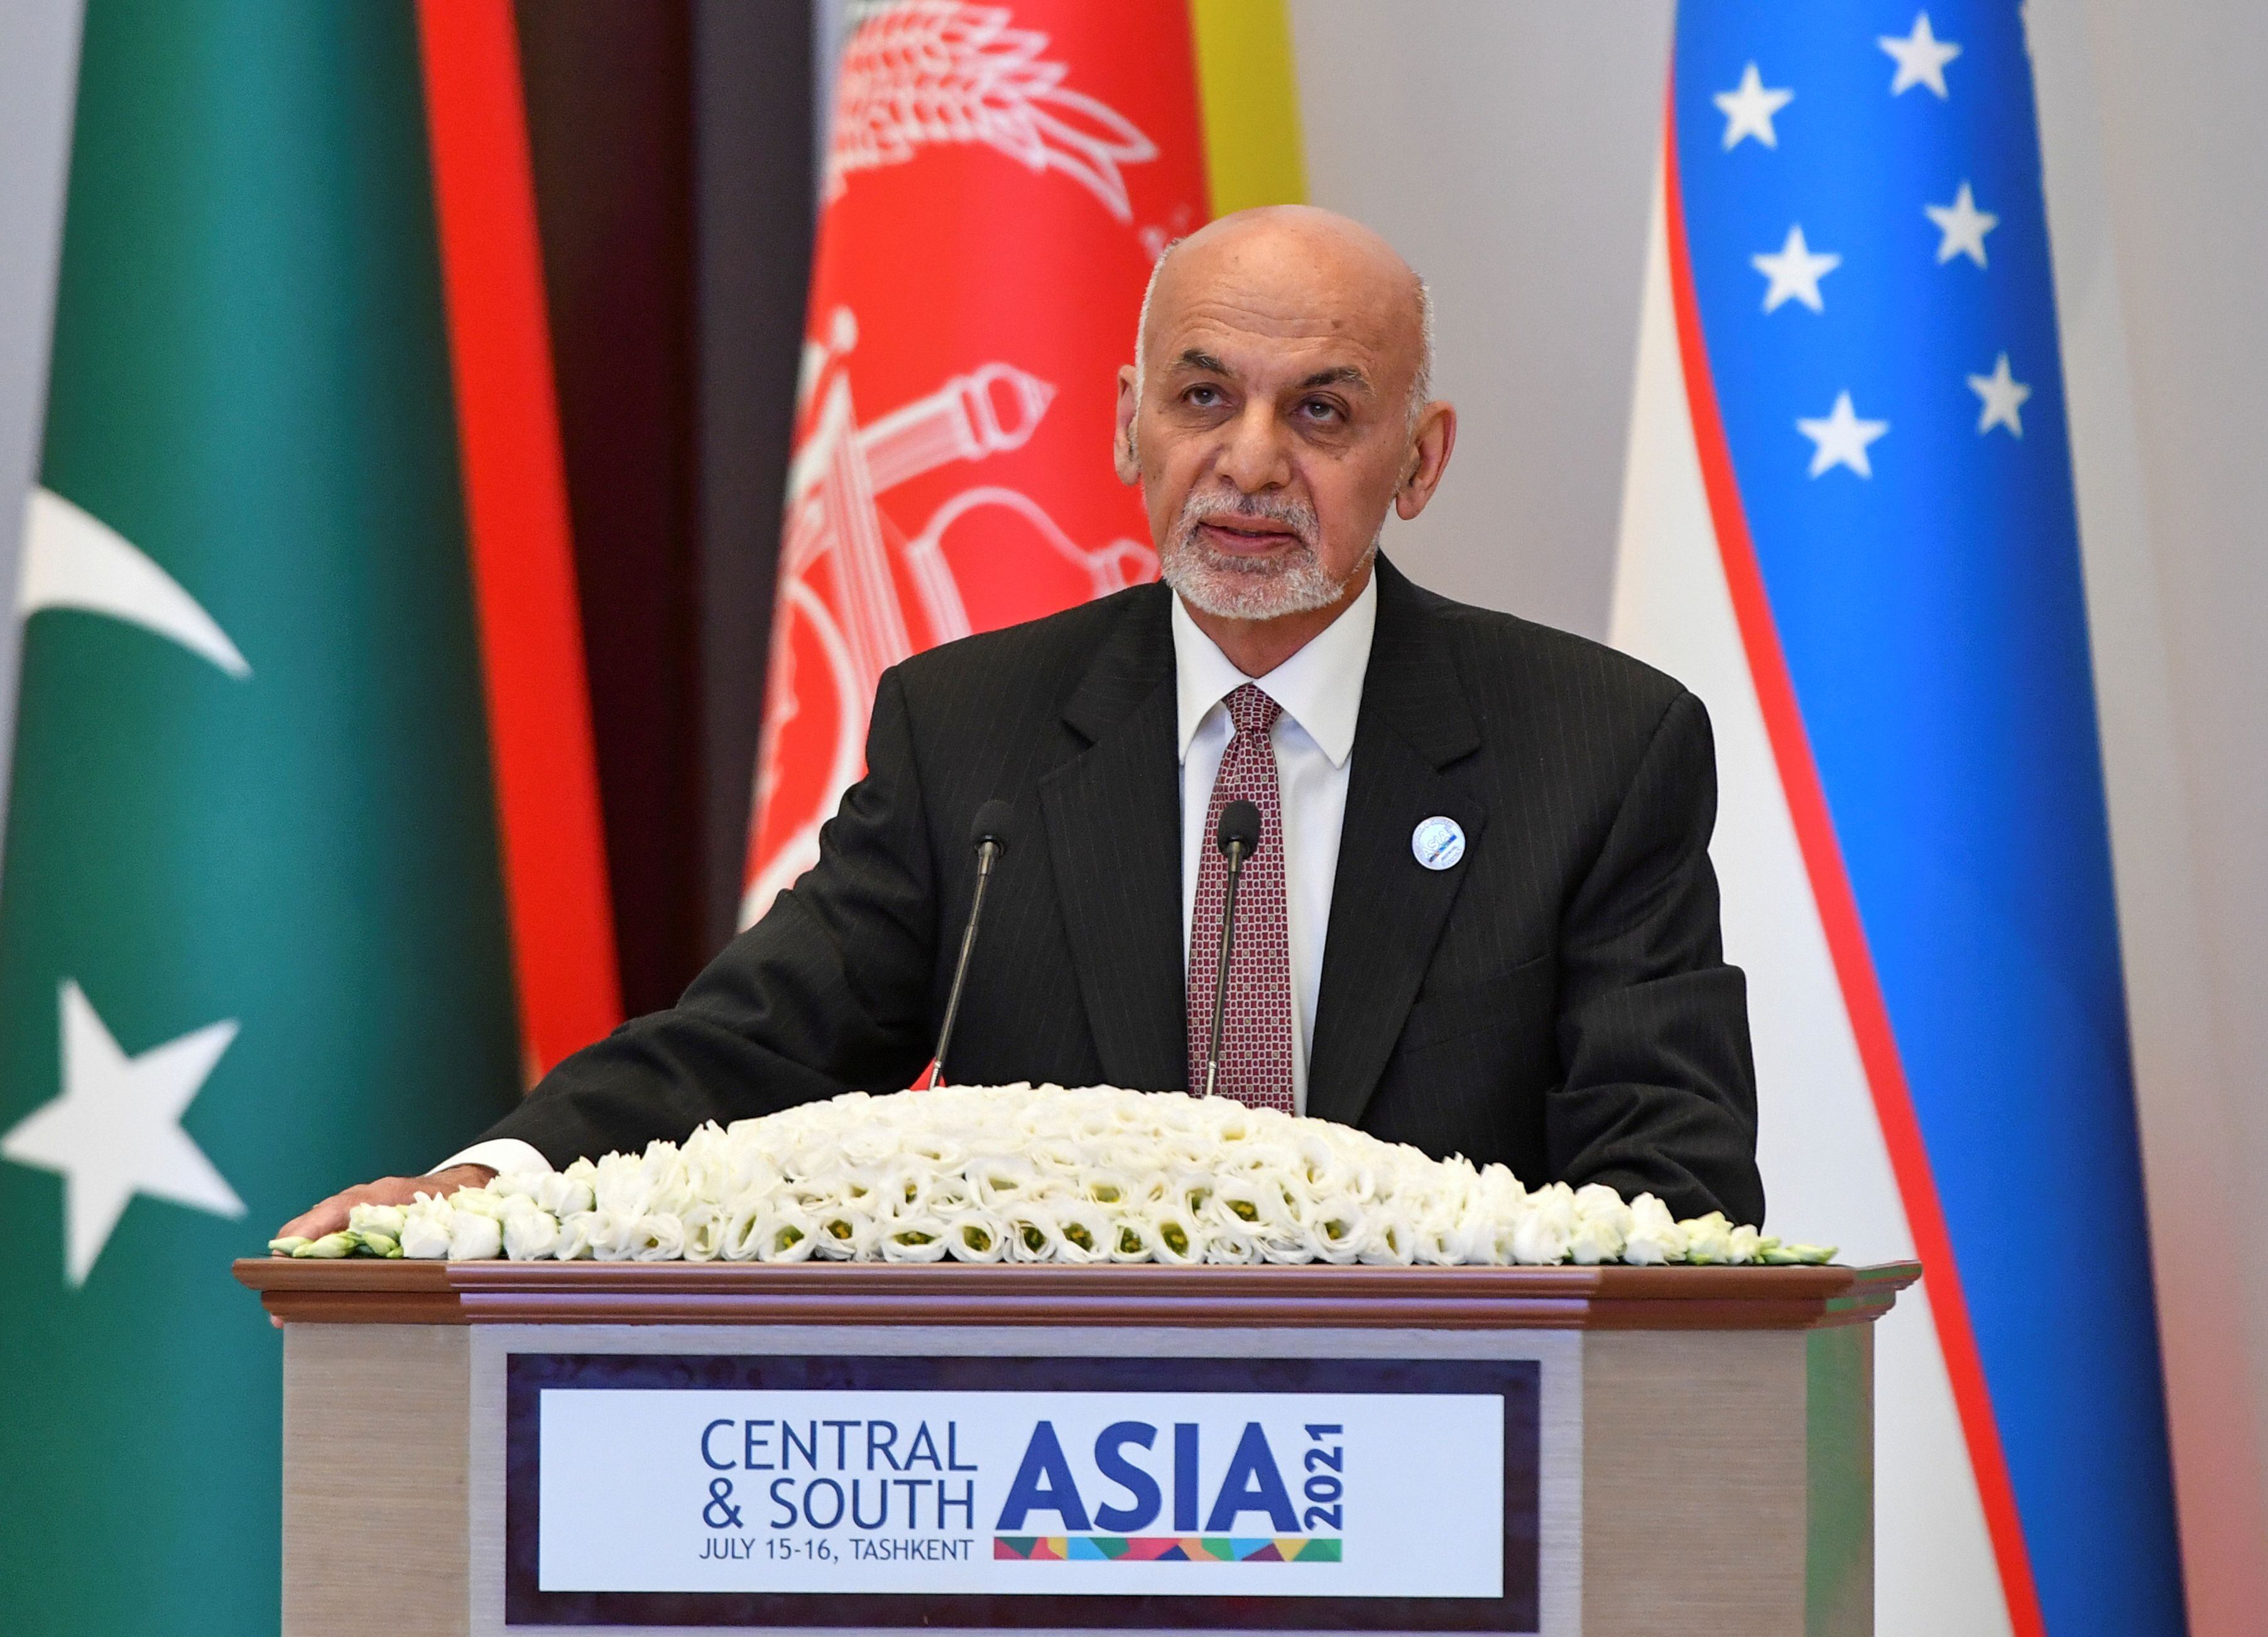 El ex presidente Ashraf Ghani, que huyó del país en 2021 cuando los talibanes entraron en Kabul, vestía a la manera occidental, incluida la corbata, cuando estaba en el extranjero (REUTERS/archivo)